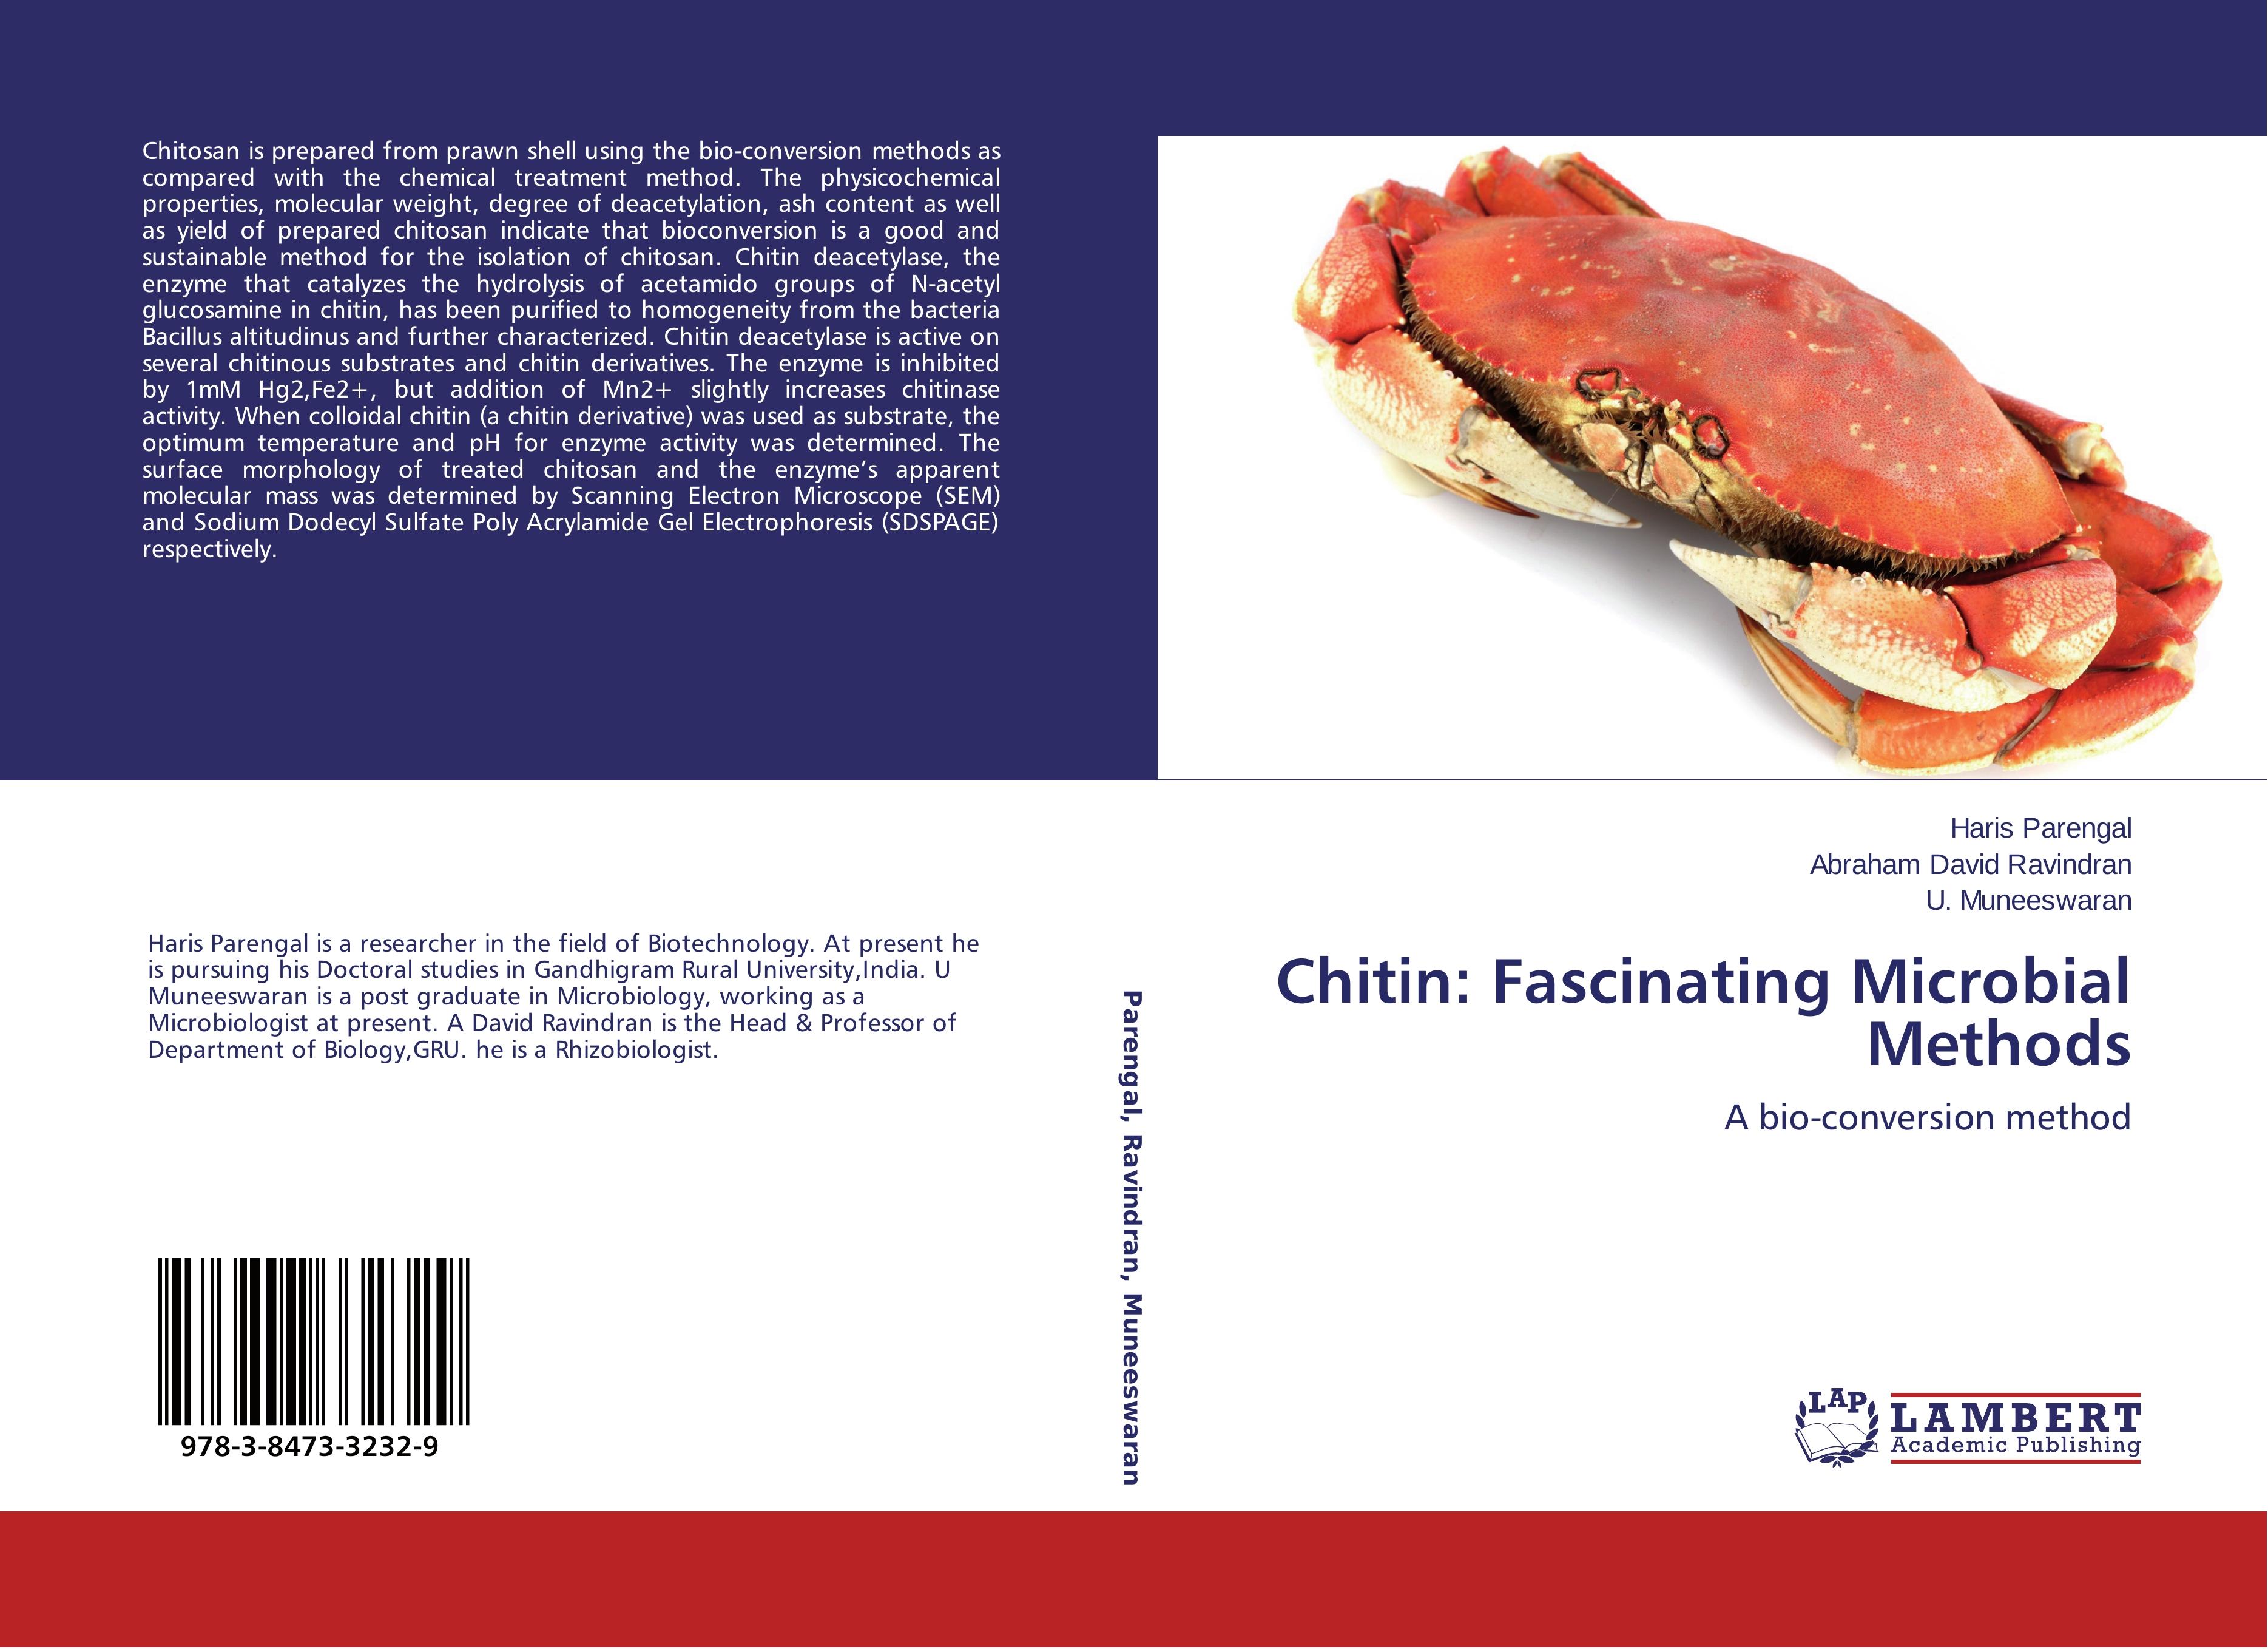 Chitin: Fascinating Microbial Methods - Haris Parengal Abraham David Ravindran U. Muneeswaran